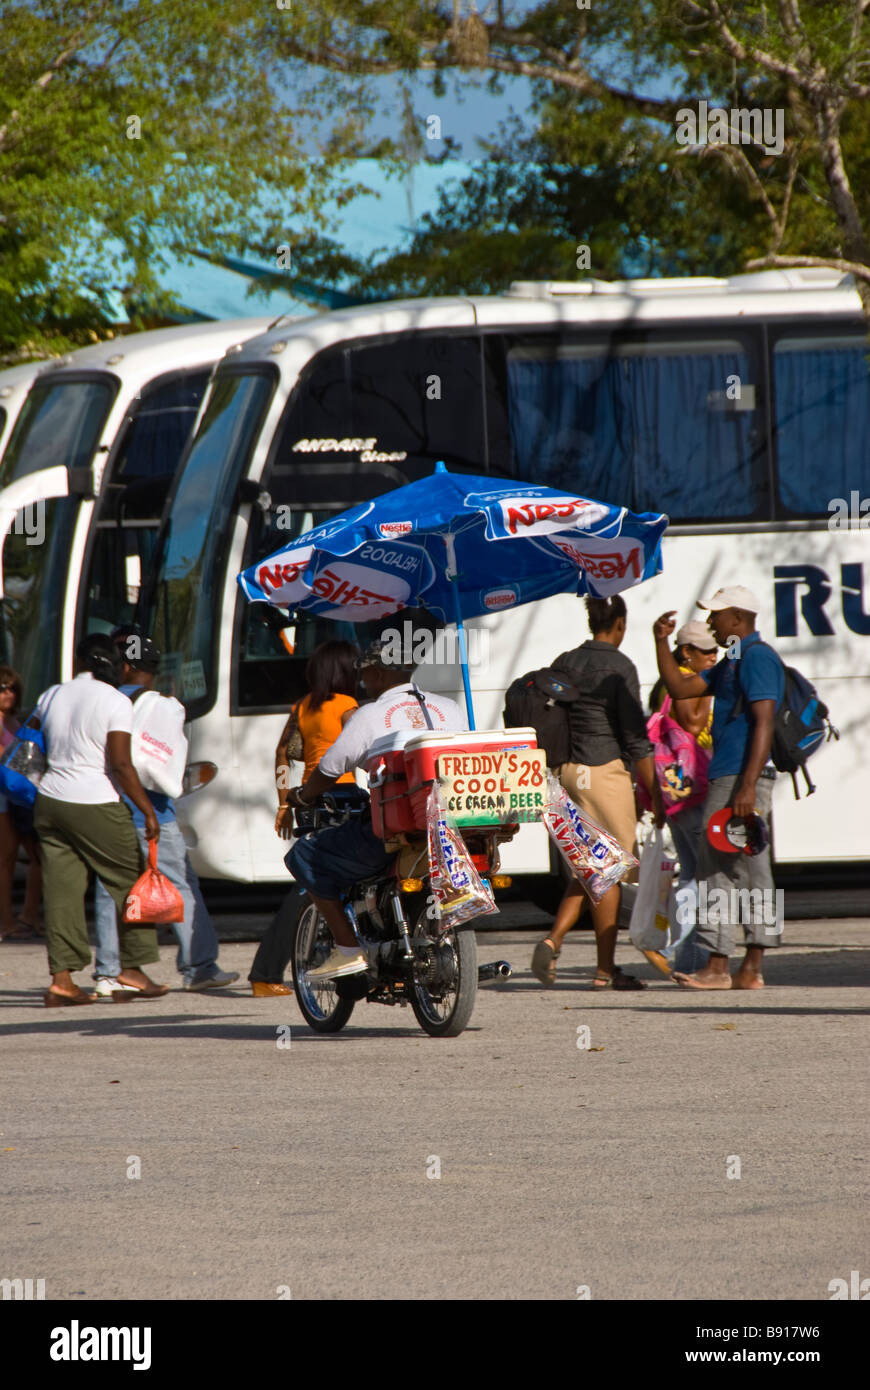 Excursión en autobús al pueblo pesquero de Bayahibe República Dominicana costa sureste popular destino turístico para excursiones en barco a Isla Saona Foto de stock